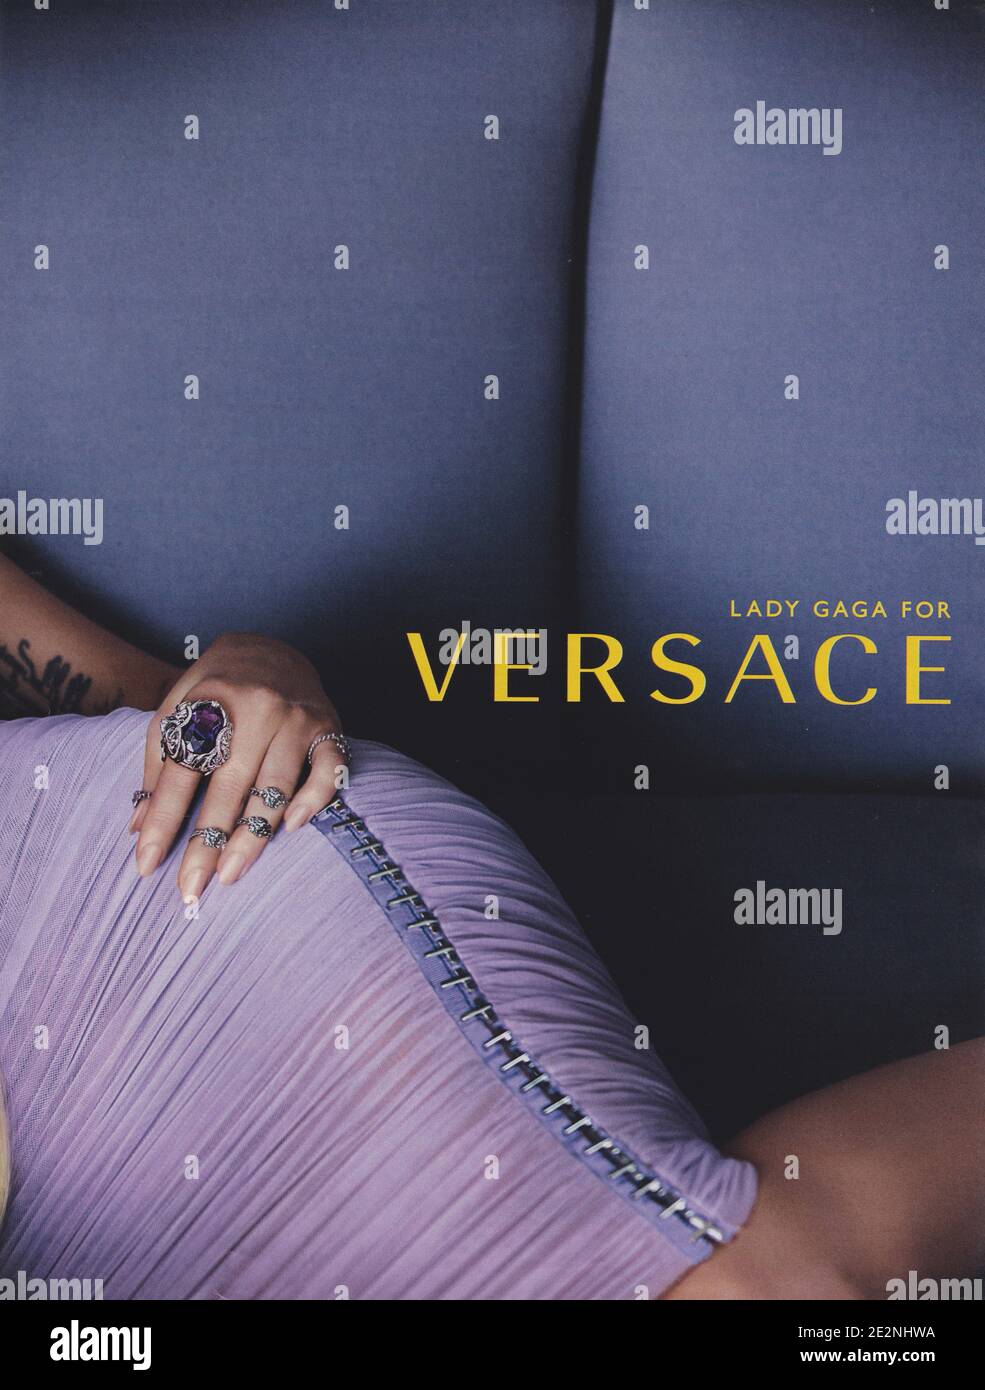 Affiche publicitaire de la maison de couture VERSACE avec Lady Gaga dans le magazine papier de l'année 2014, une publicité, une publicité à partir d'VERSACE créatifs 2010s Banque D'Images